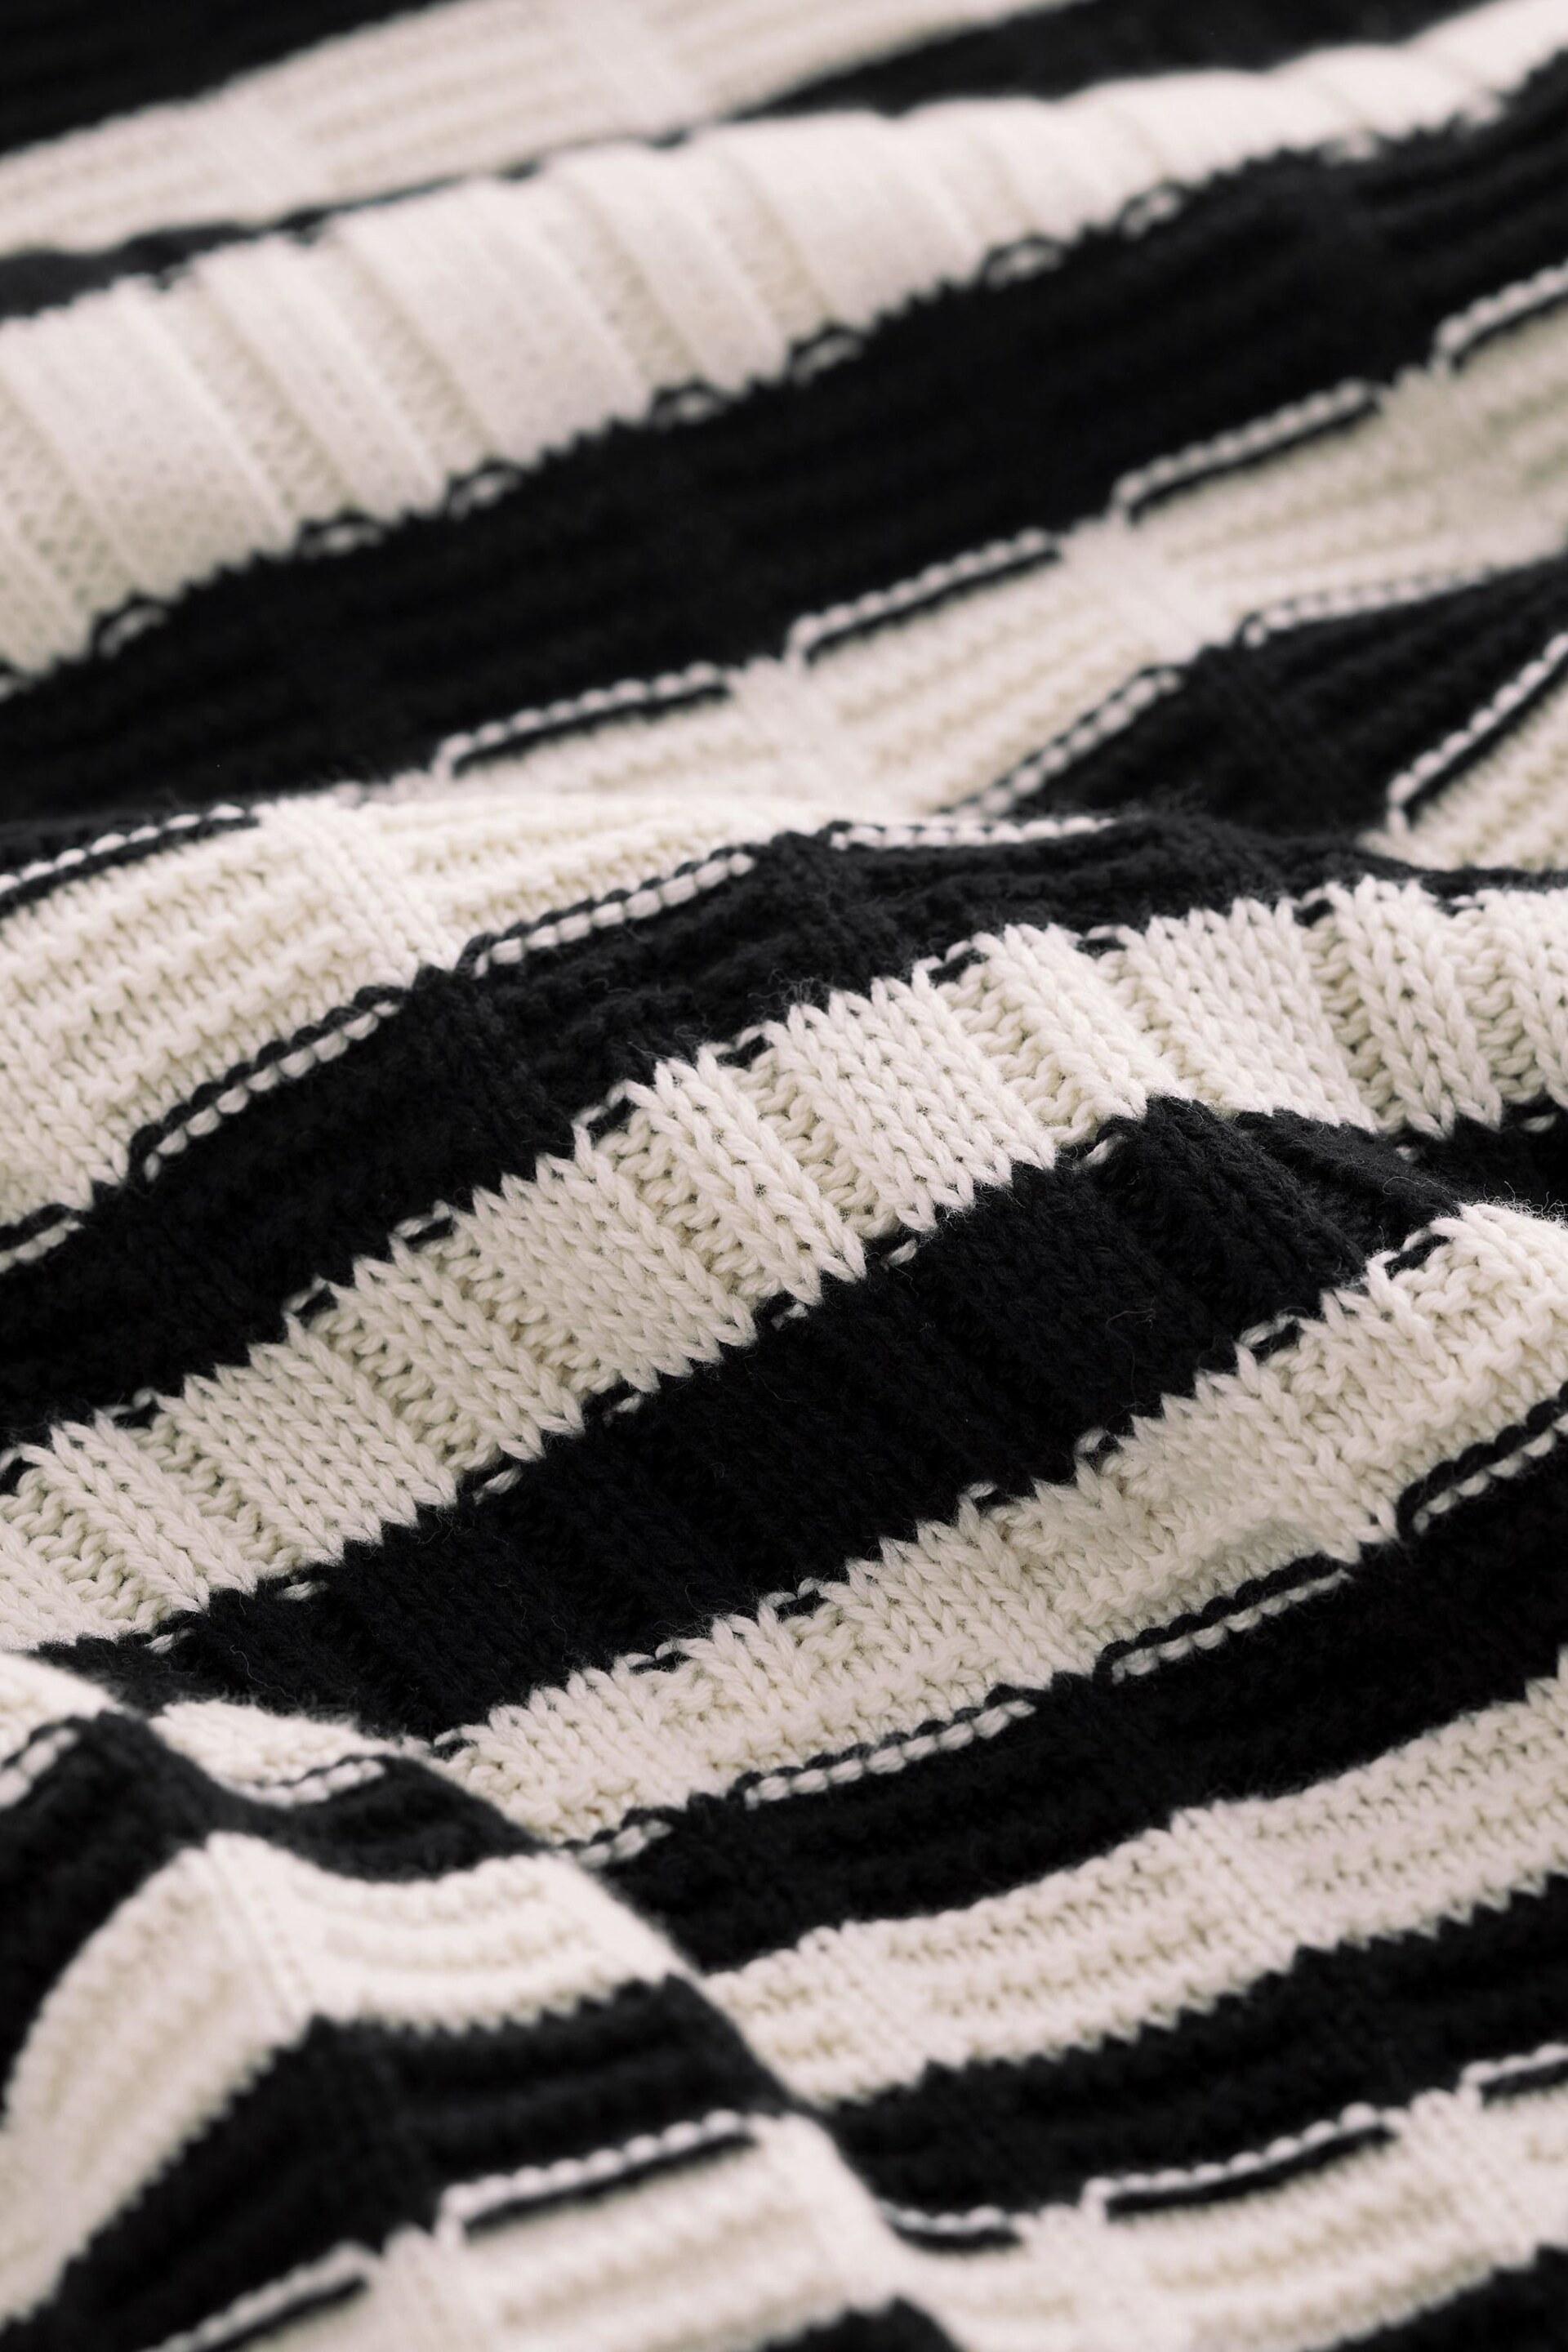 Black and Ecru Cream Stripe Stitch Detail Shirt Layer Jumper - Image 6 of 6